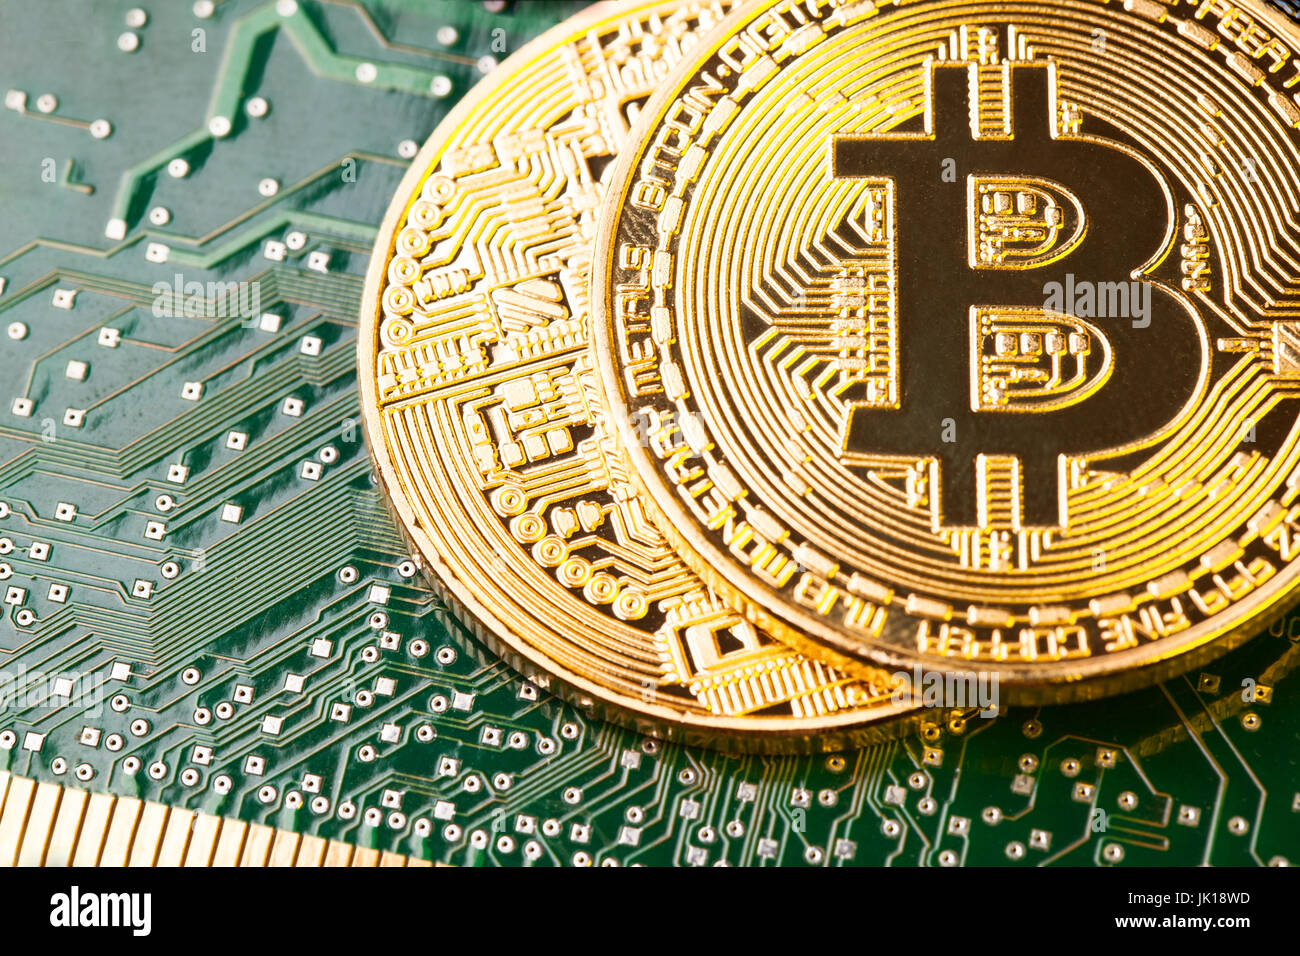 Bitcoin or Cryptocurrency sur carte de circuit imprimé. Macro shot Banque D'Images